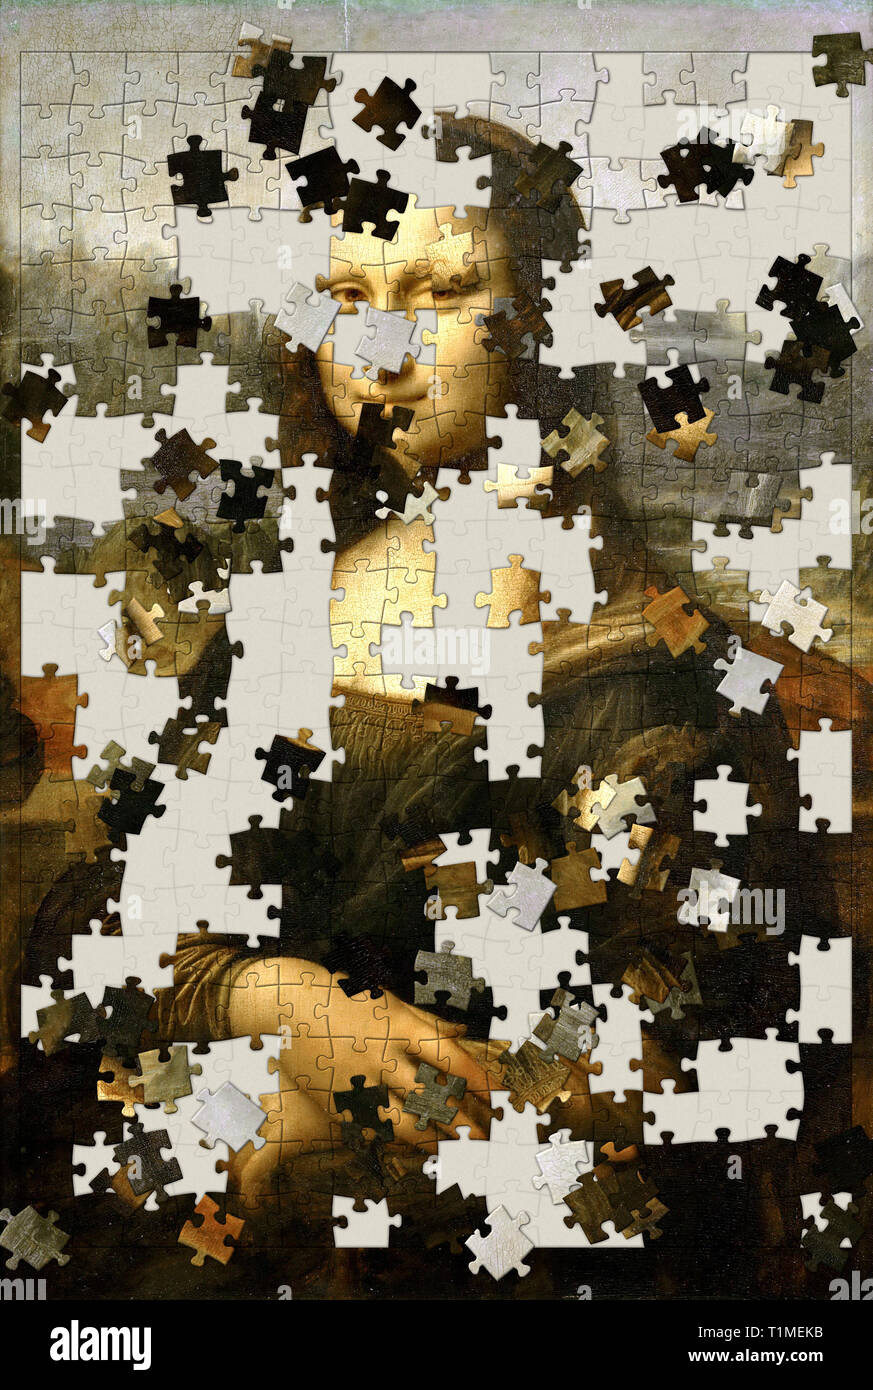 Mona Lisa peinture comme un puzzle inachevé Photo Stock - Alamy